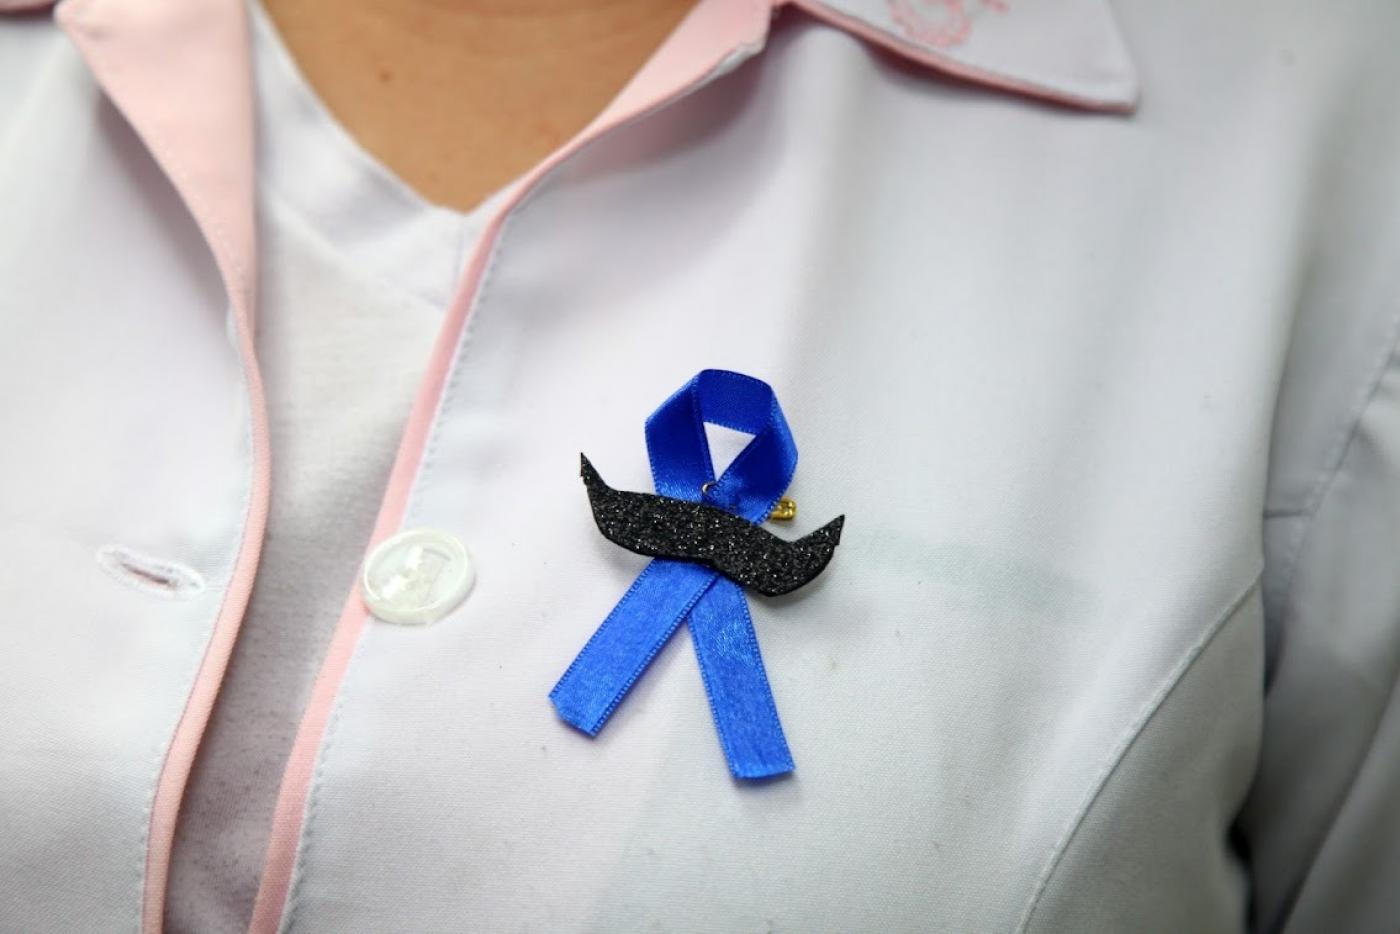 Simbolo do novembro azul no jaleco de uma profissional de saúde #paratodosverem